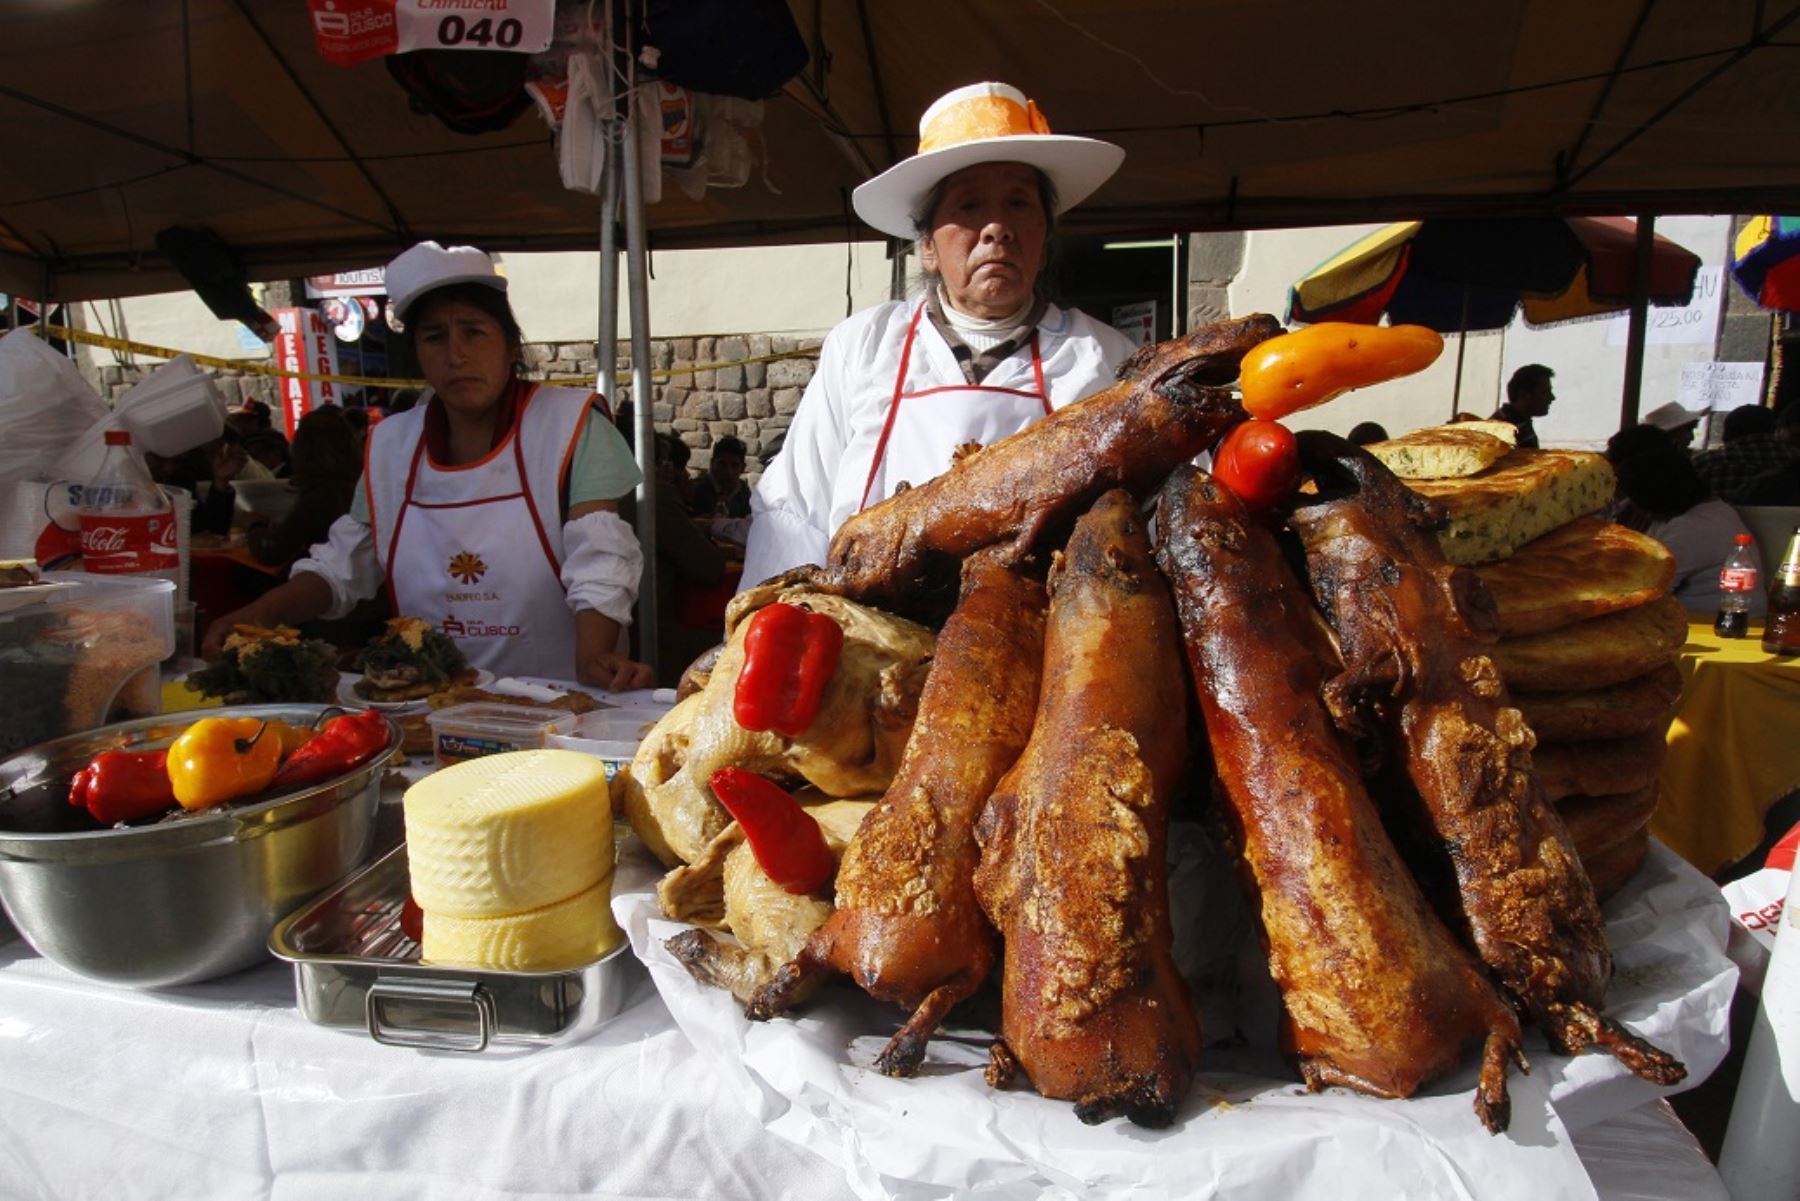 Se anunció Festival del Chiriuchu, plato ancestral de Cusco. La actividad se desarrollará durante el Corpus Christi. ANDINA/Percy Hurtado